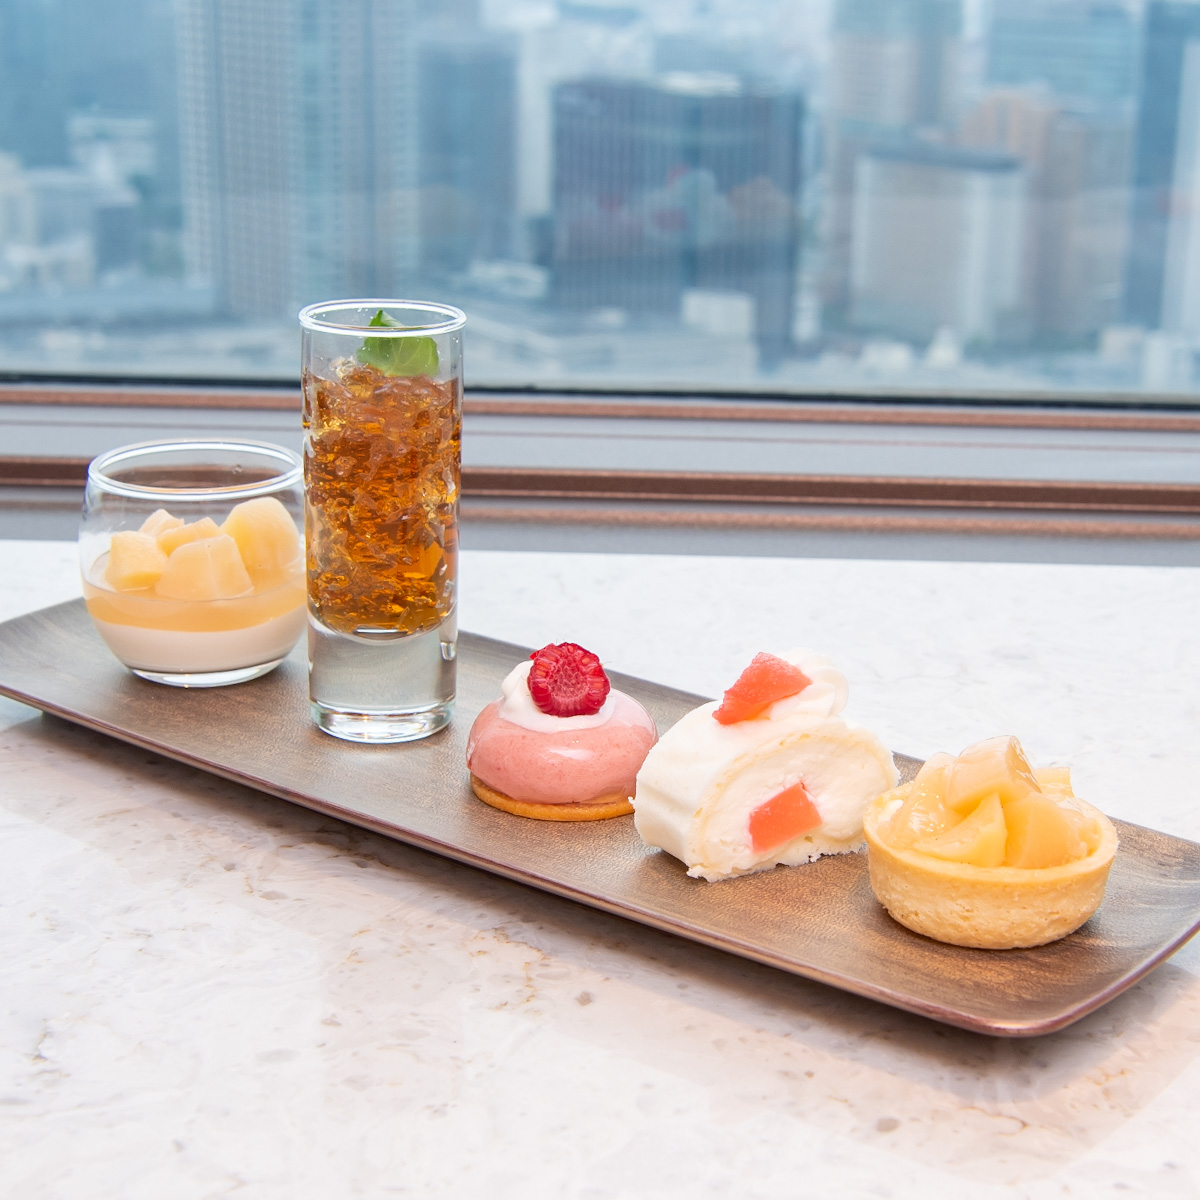 品川プリンスホテル「DINING & BAR TABLE 9 TOKYO」Peach & Milk プチポーションスイーツ